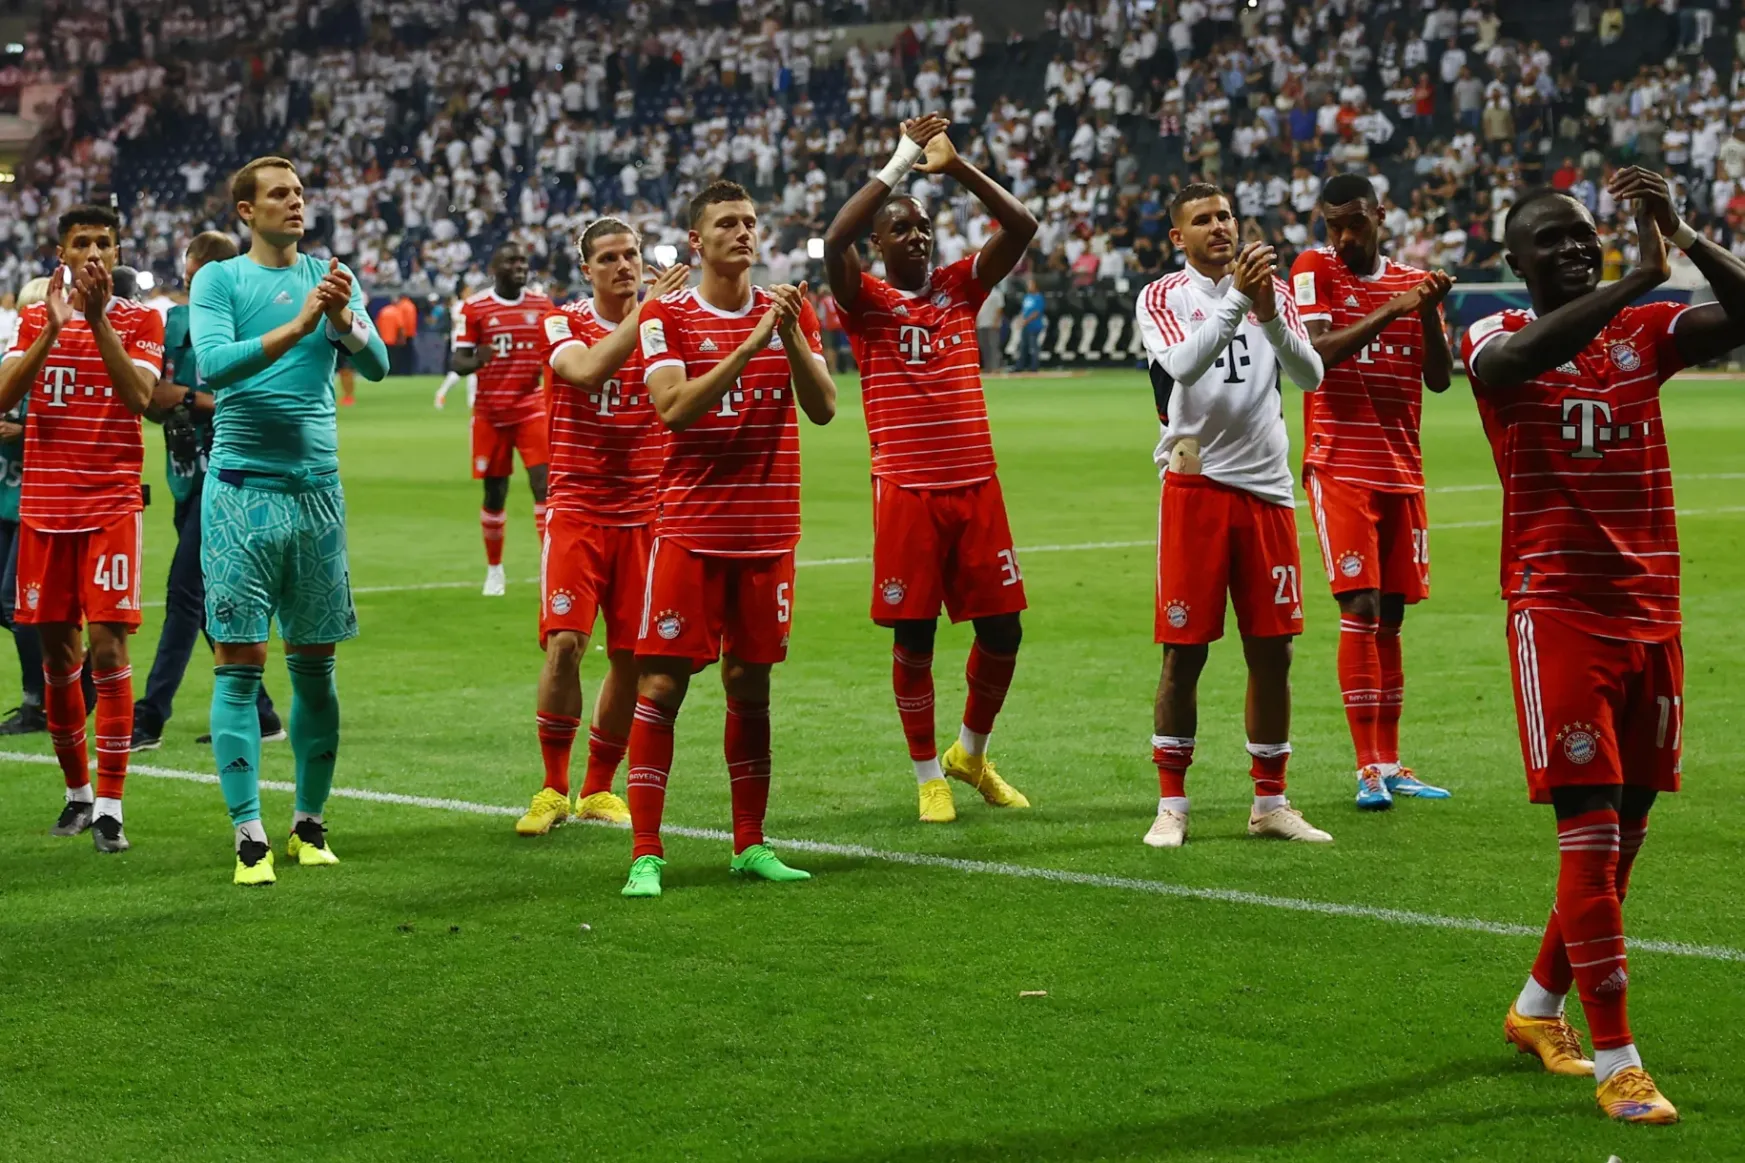 A katari foci-vb miatt a Bundesliga, a Premier League és a Ligue 1 is elkezdődött pénteken